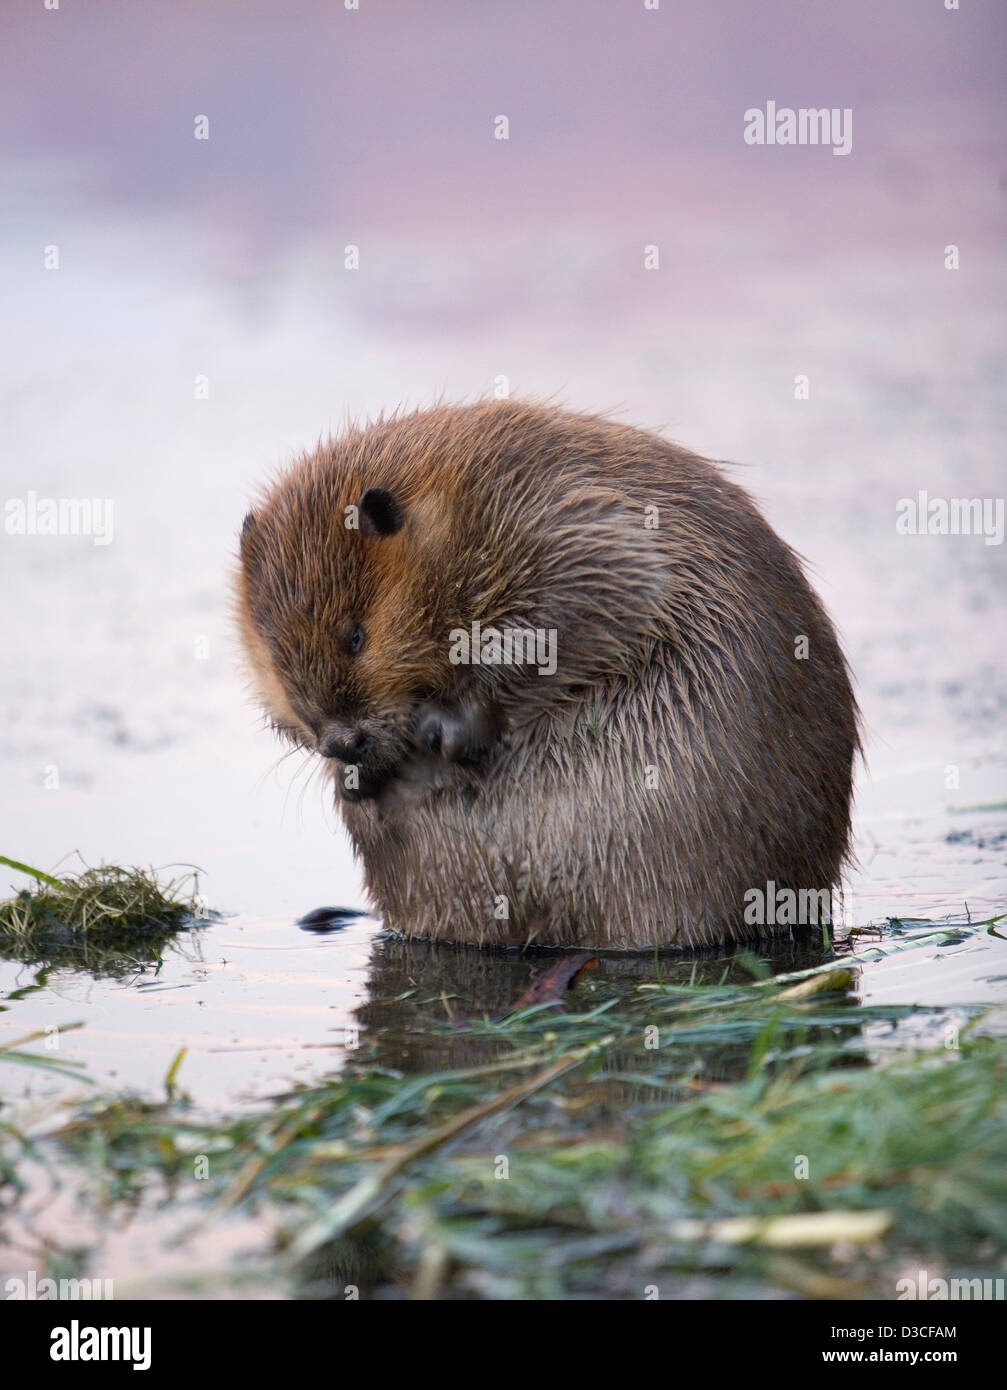 North American beaver in the Colorado river Arizona, USA Stock Photo